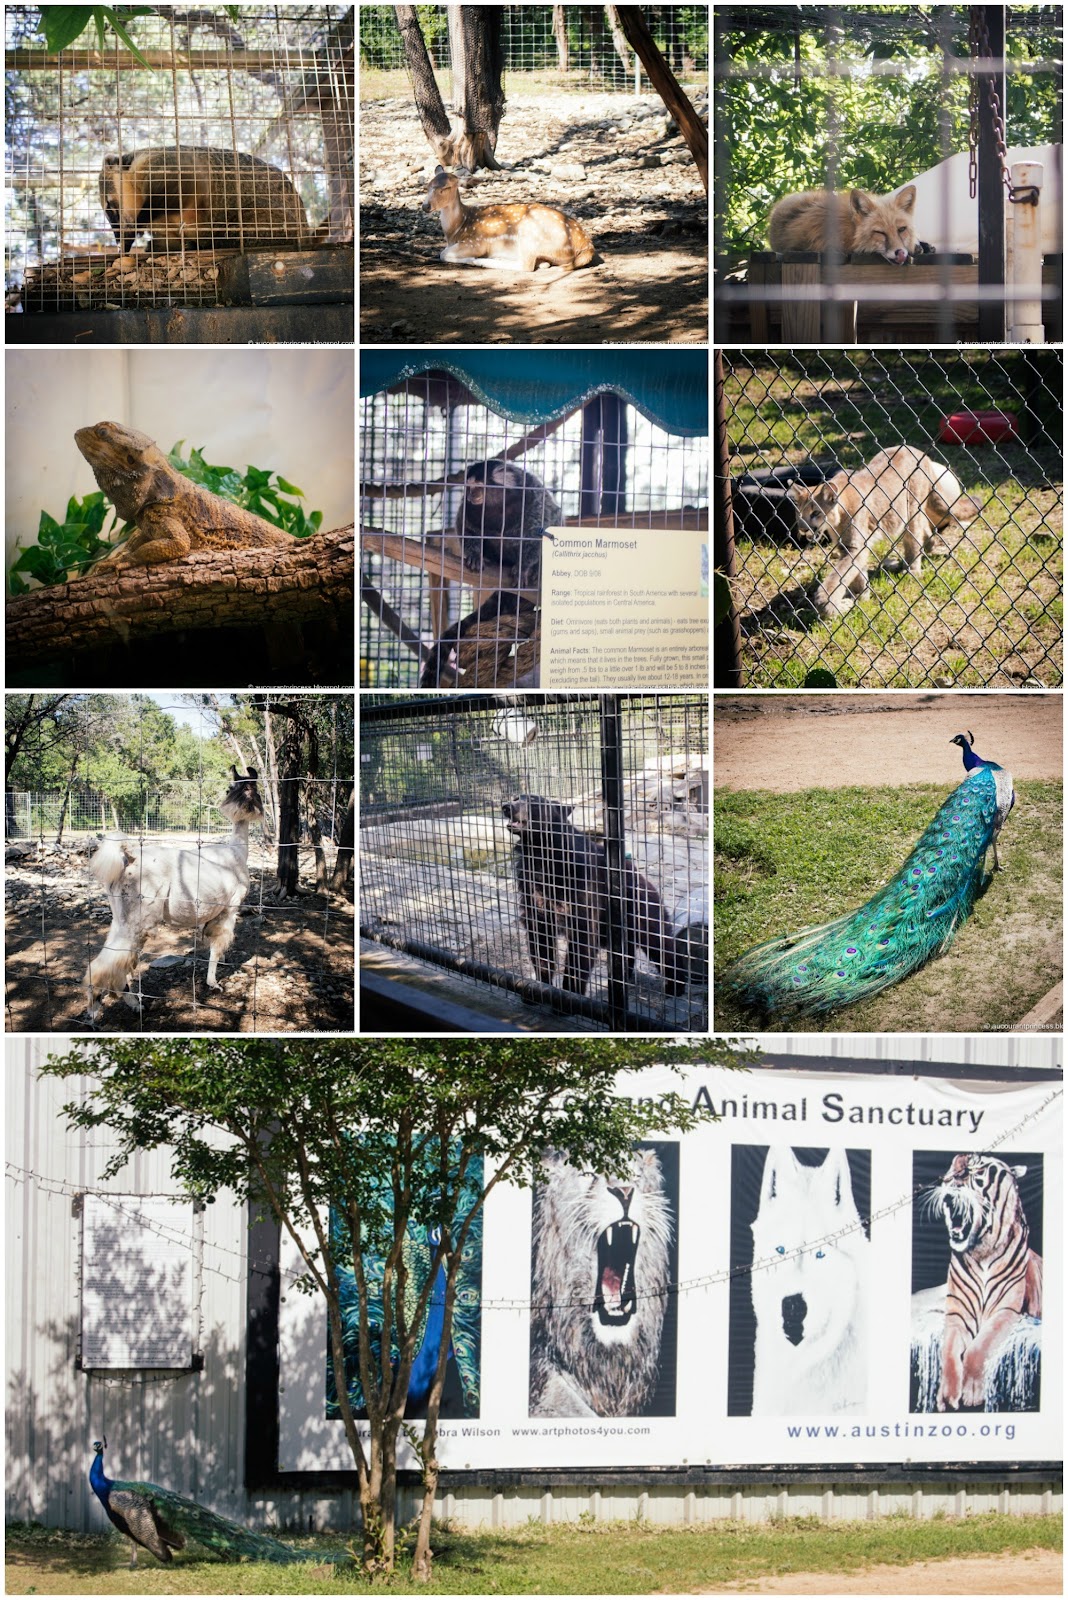 Austin Zoo: Things To Do in Austin, Texas USA